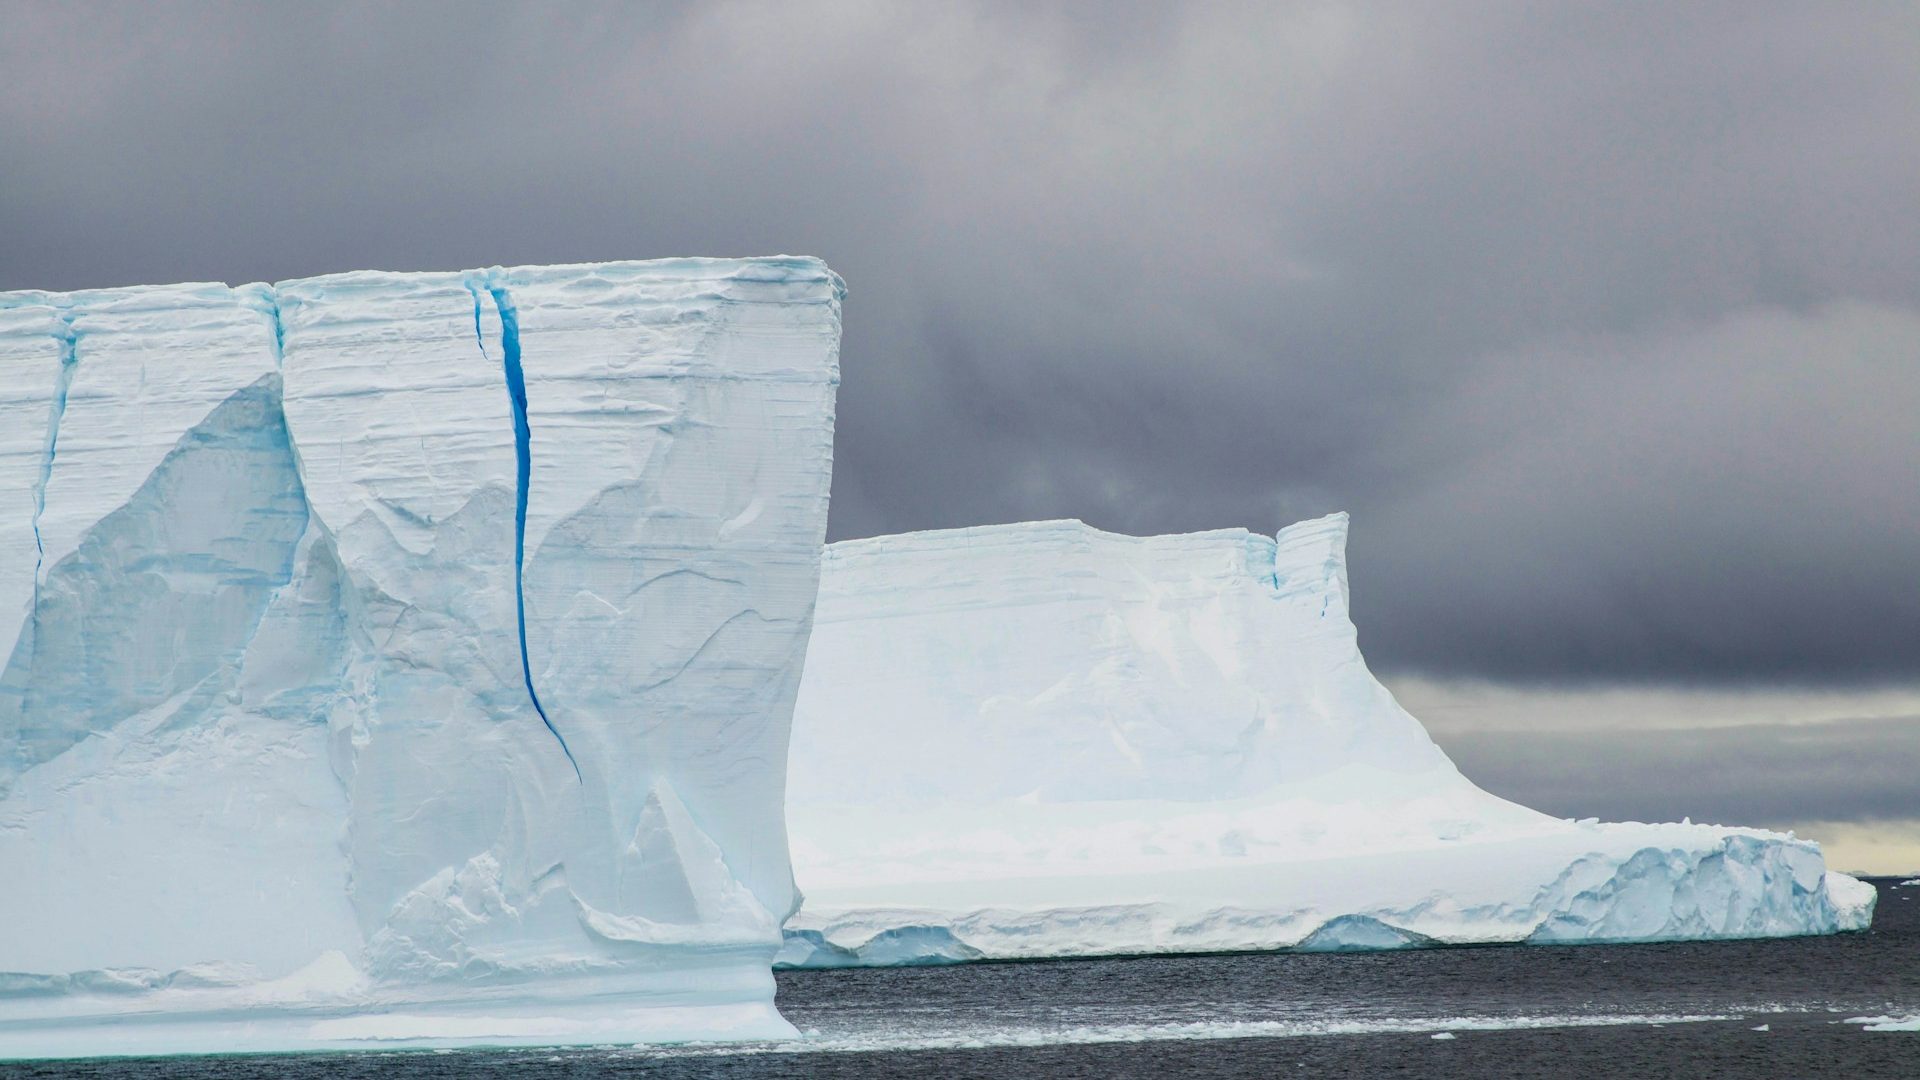 Rinnovabili • Fusione ghiacci Antartide: il Polo Sud sta perdendo gli “ormeggi”